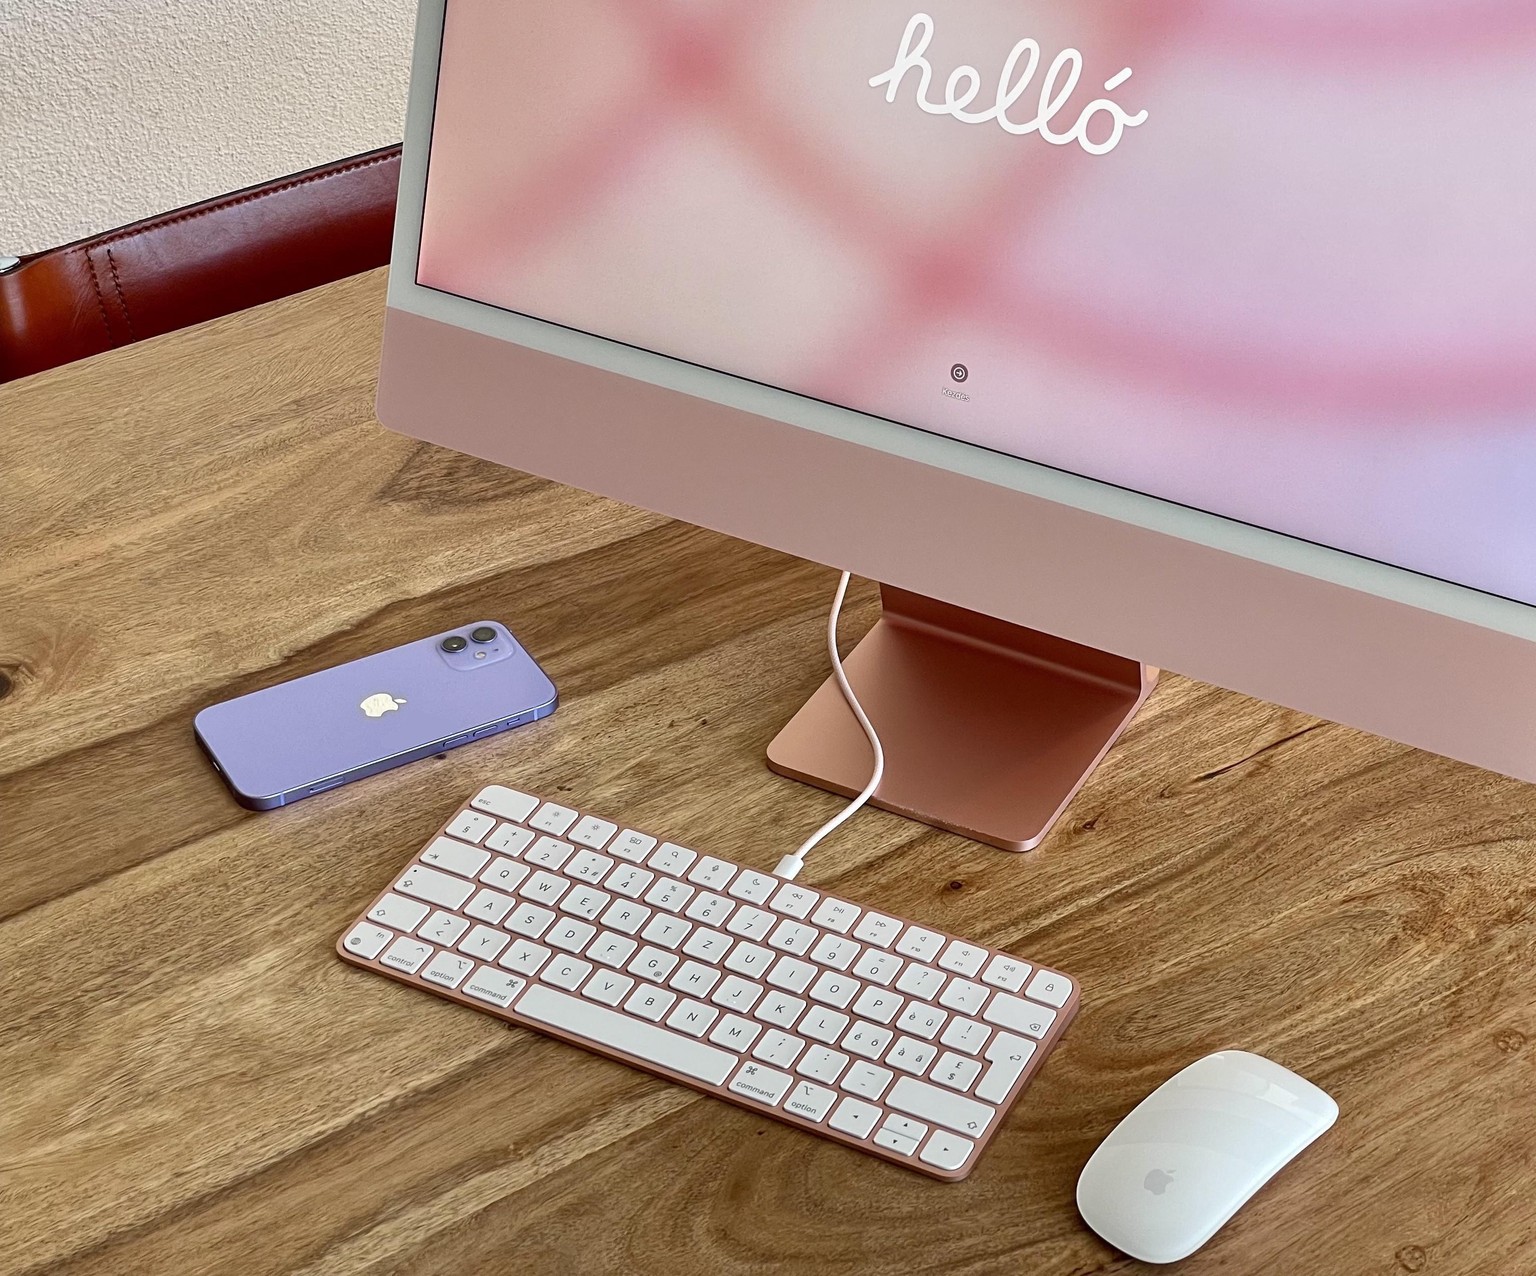 iMac 24 Zoll mit M1-Chip, 2021, dazu ein iPhone 12 (violett).